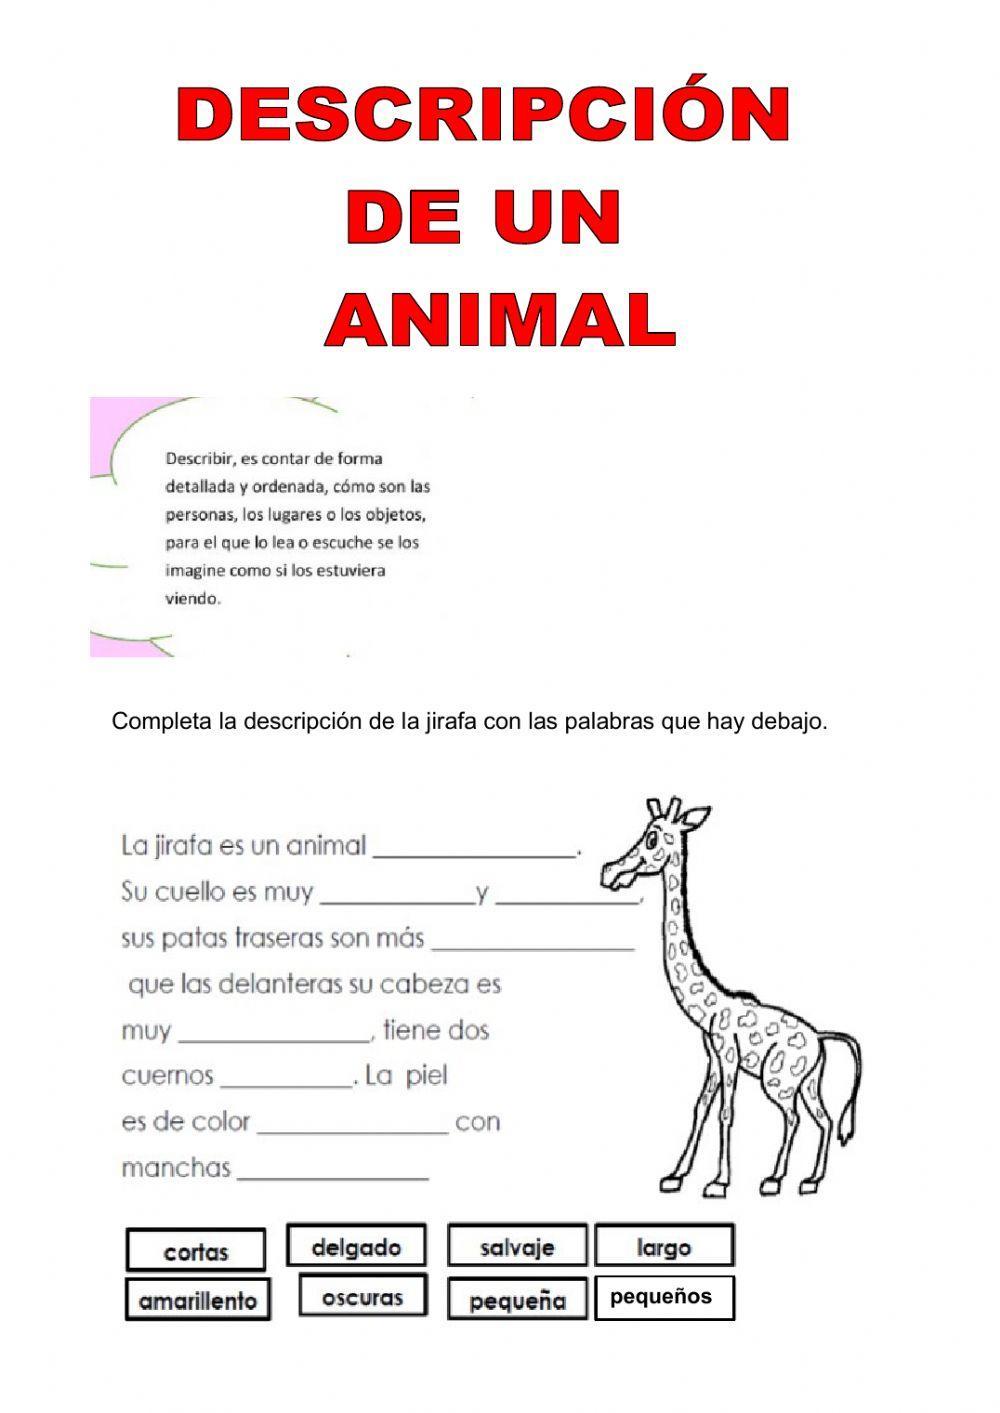 La descripción de animales